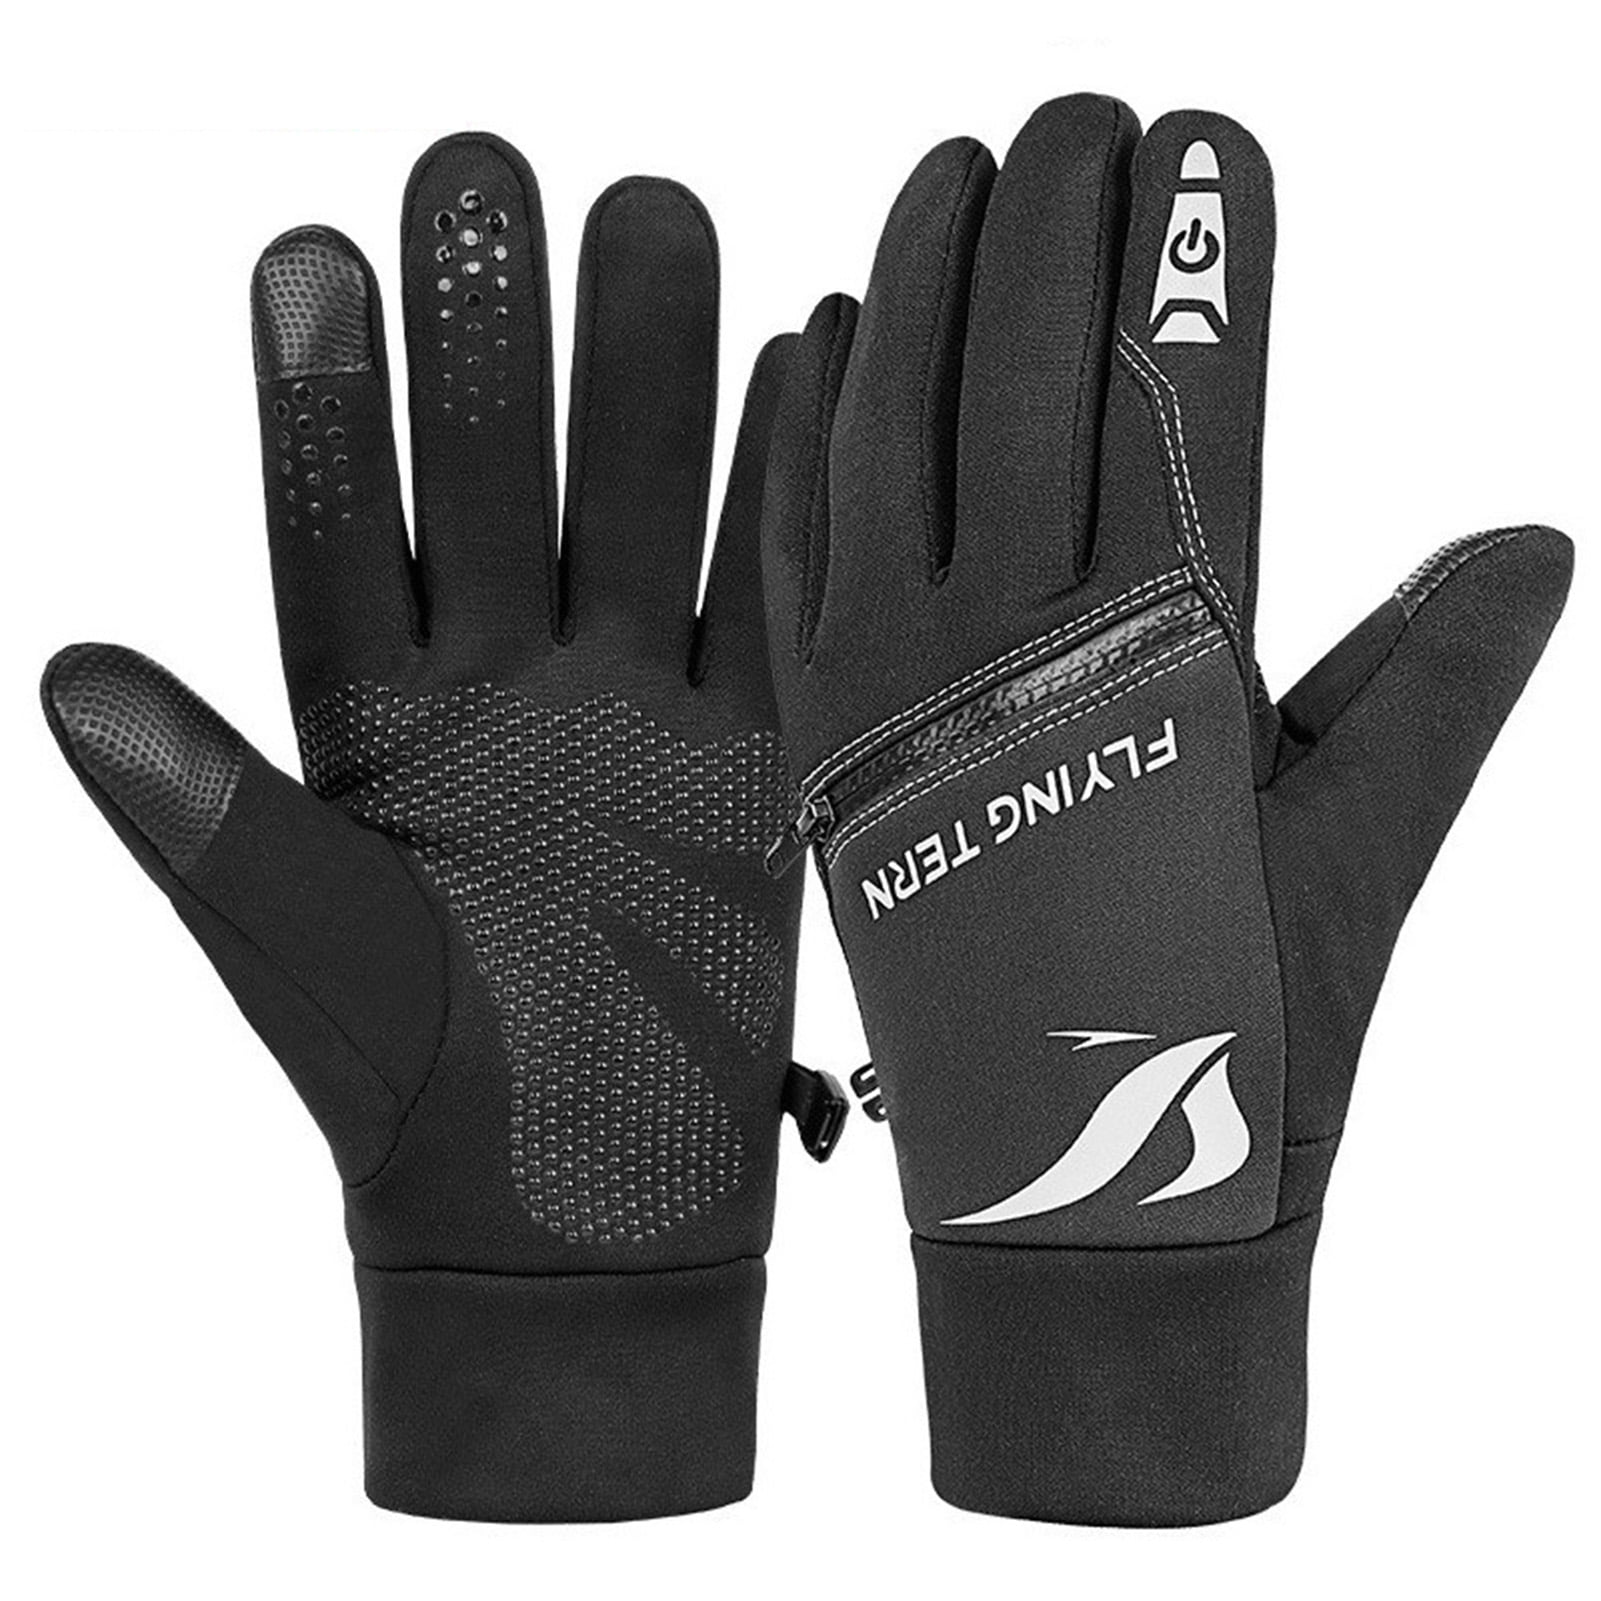 Warmer Gloves Windproof Waterproof Bike Cycling Skiing Full Finger Winter Glove 